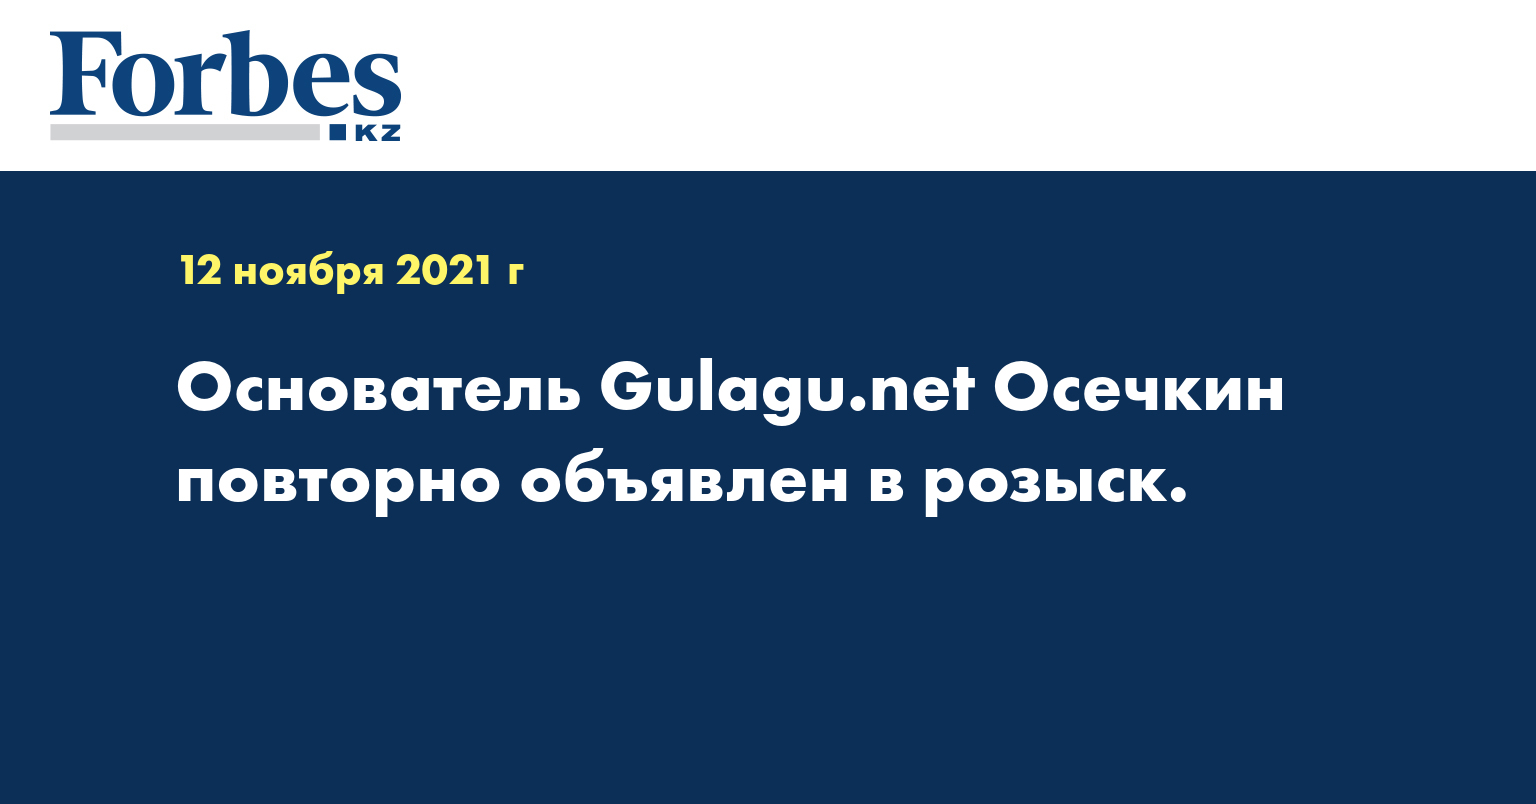 Основатель Gulagu.net Осечкин повторно объявлен в розыск.